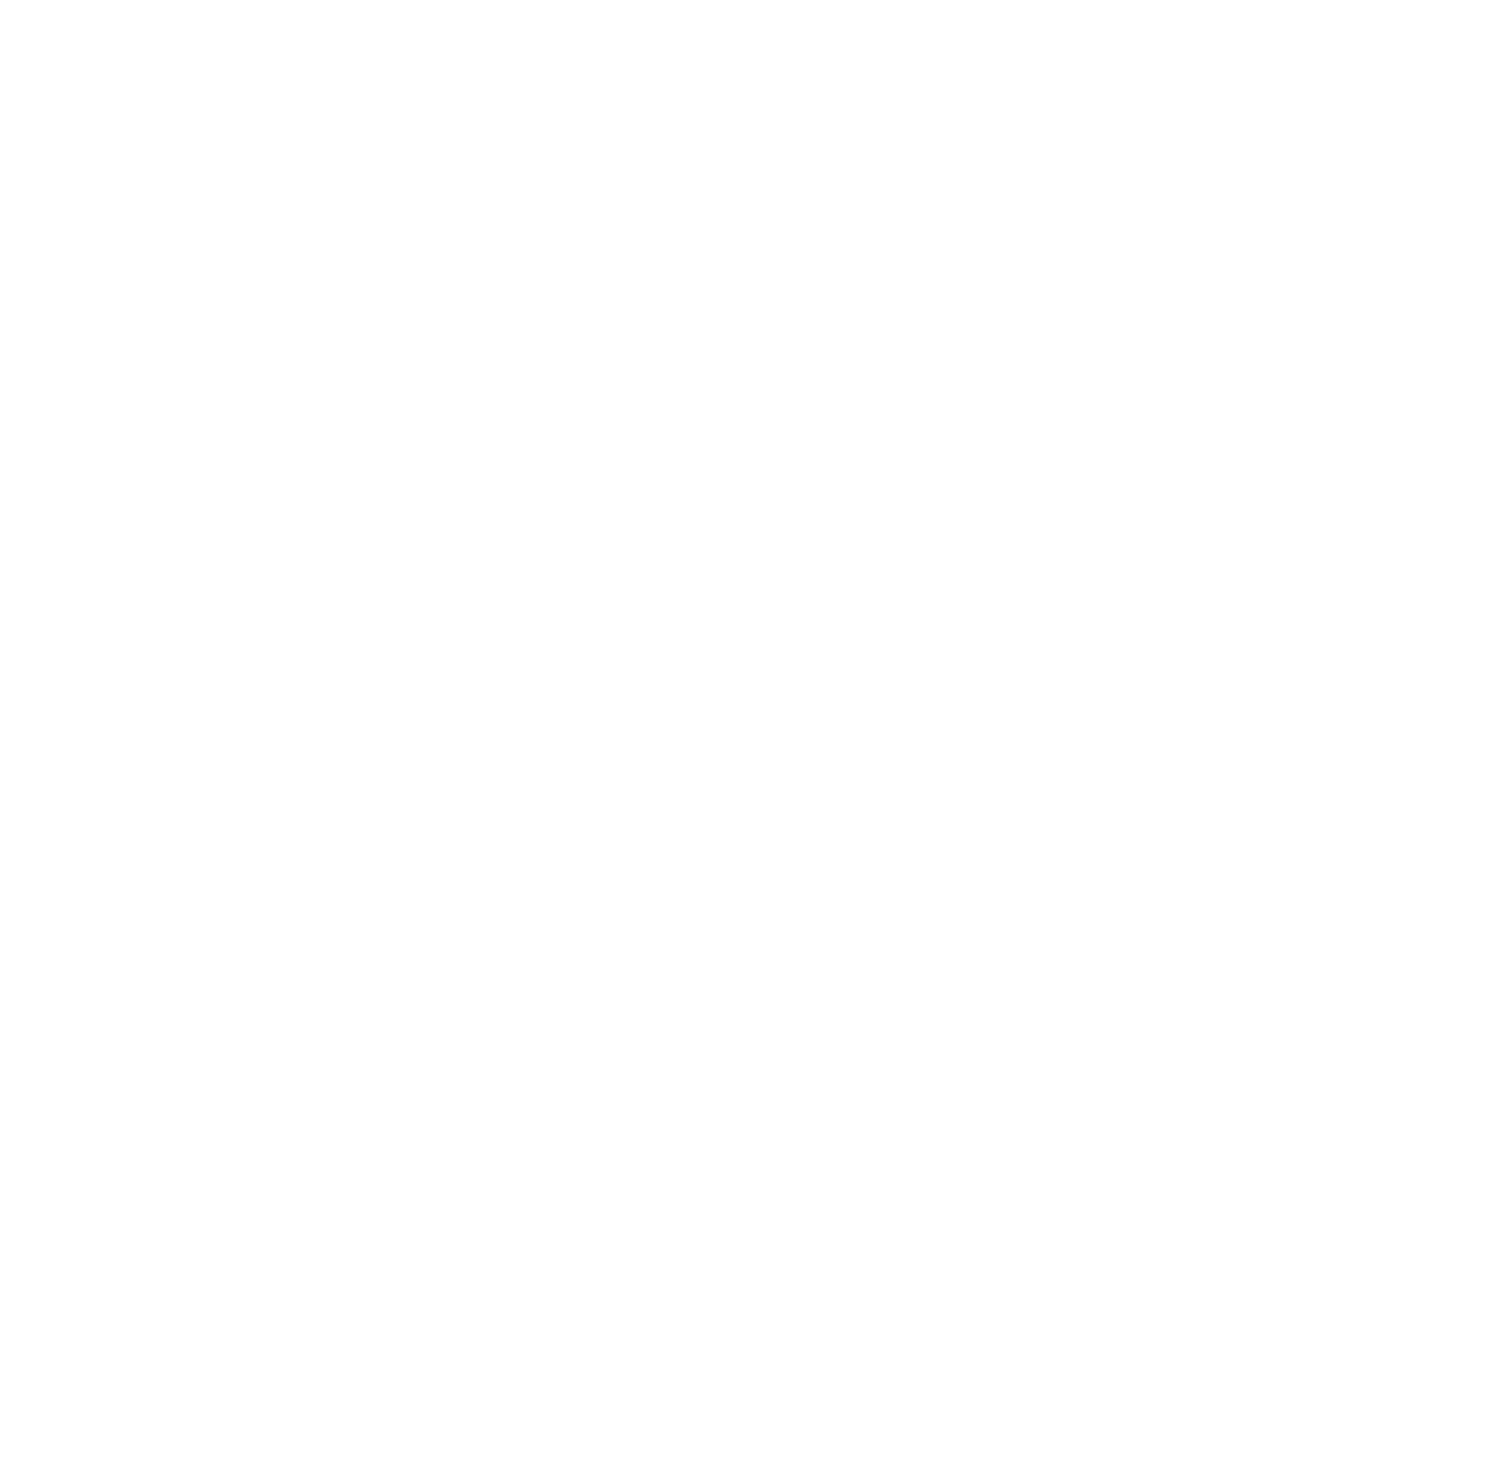 Hooker Furniture logo pour fonds sombres (PNG transparent)